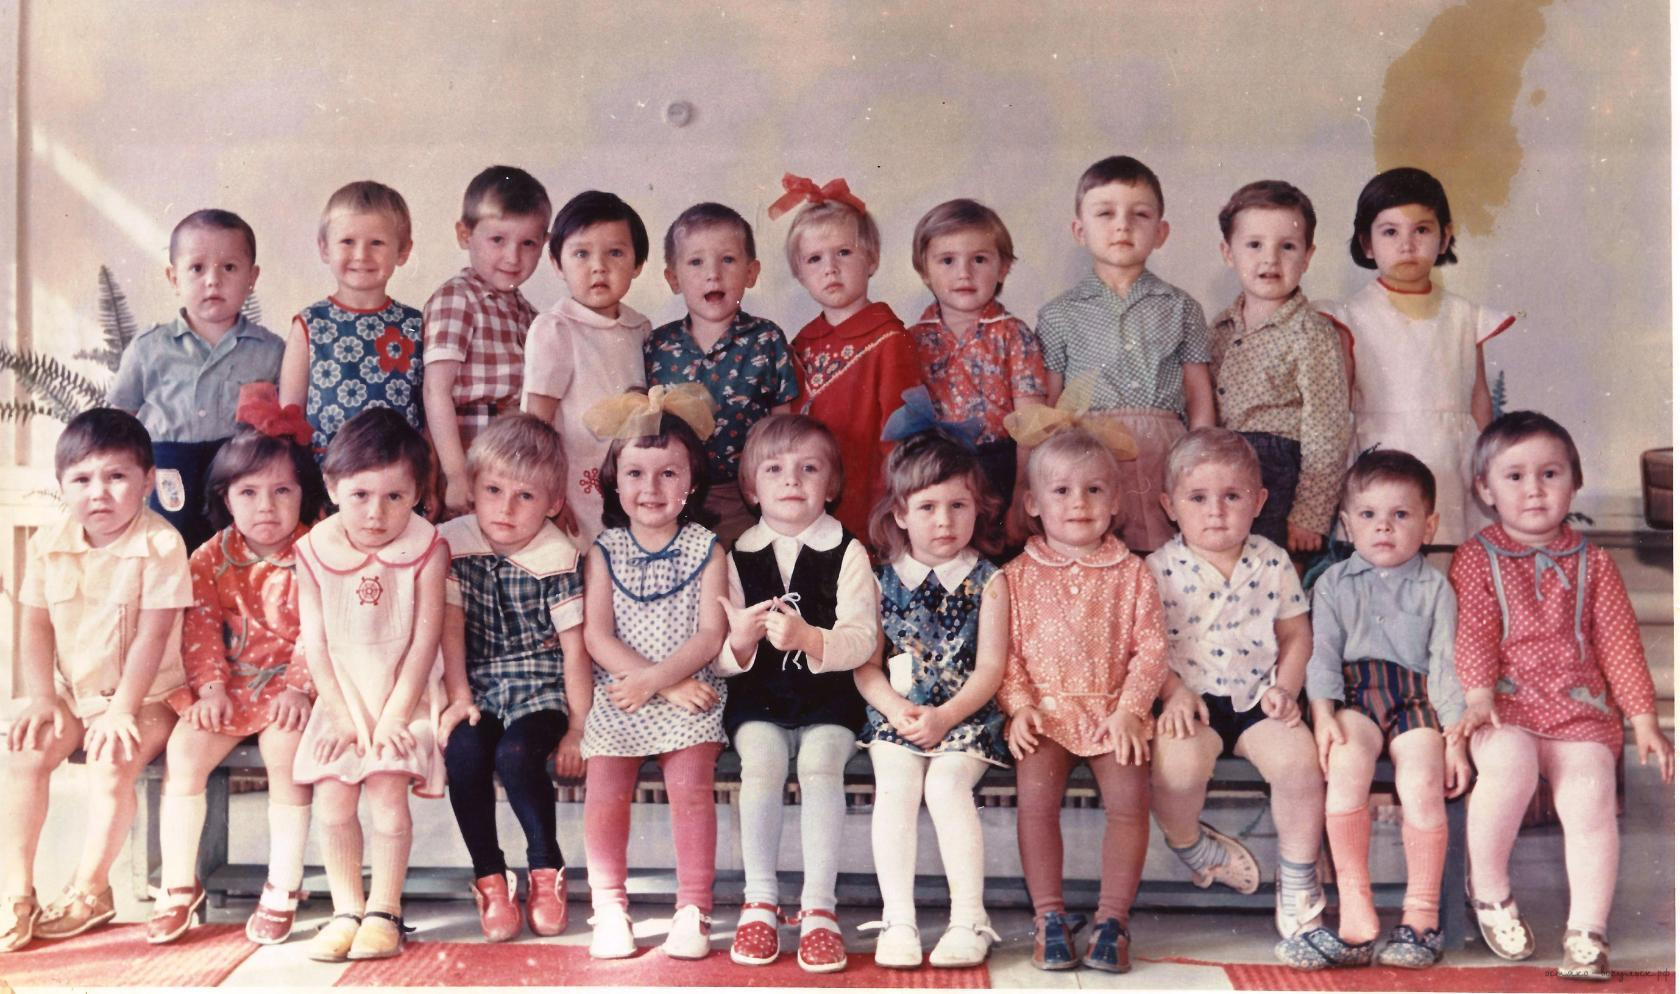 фото детских садов вологды в 60 годы